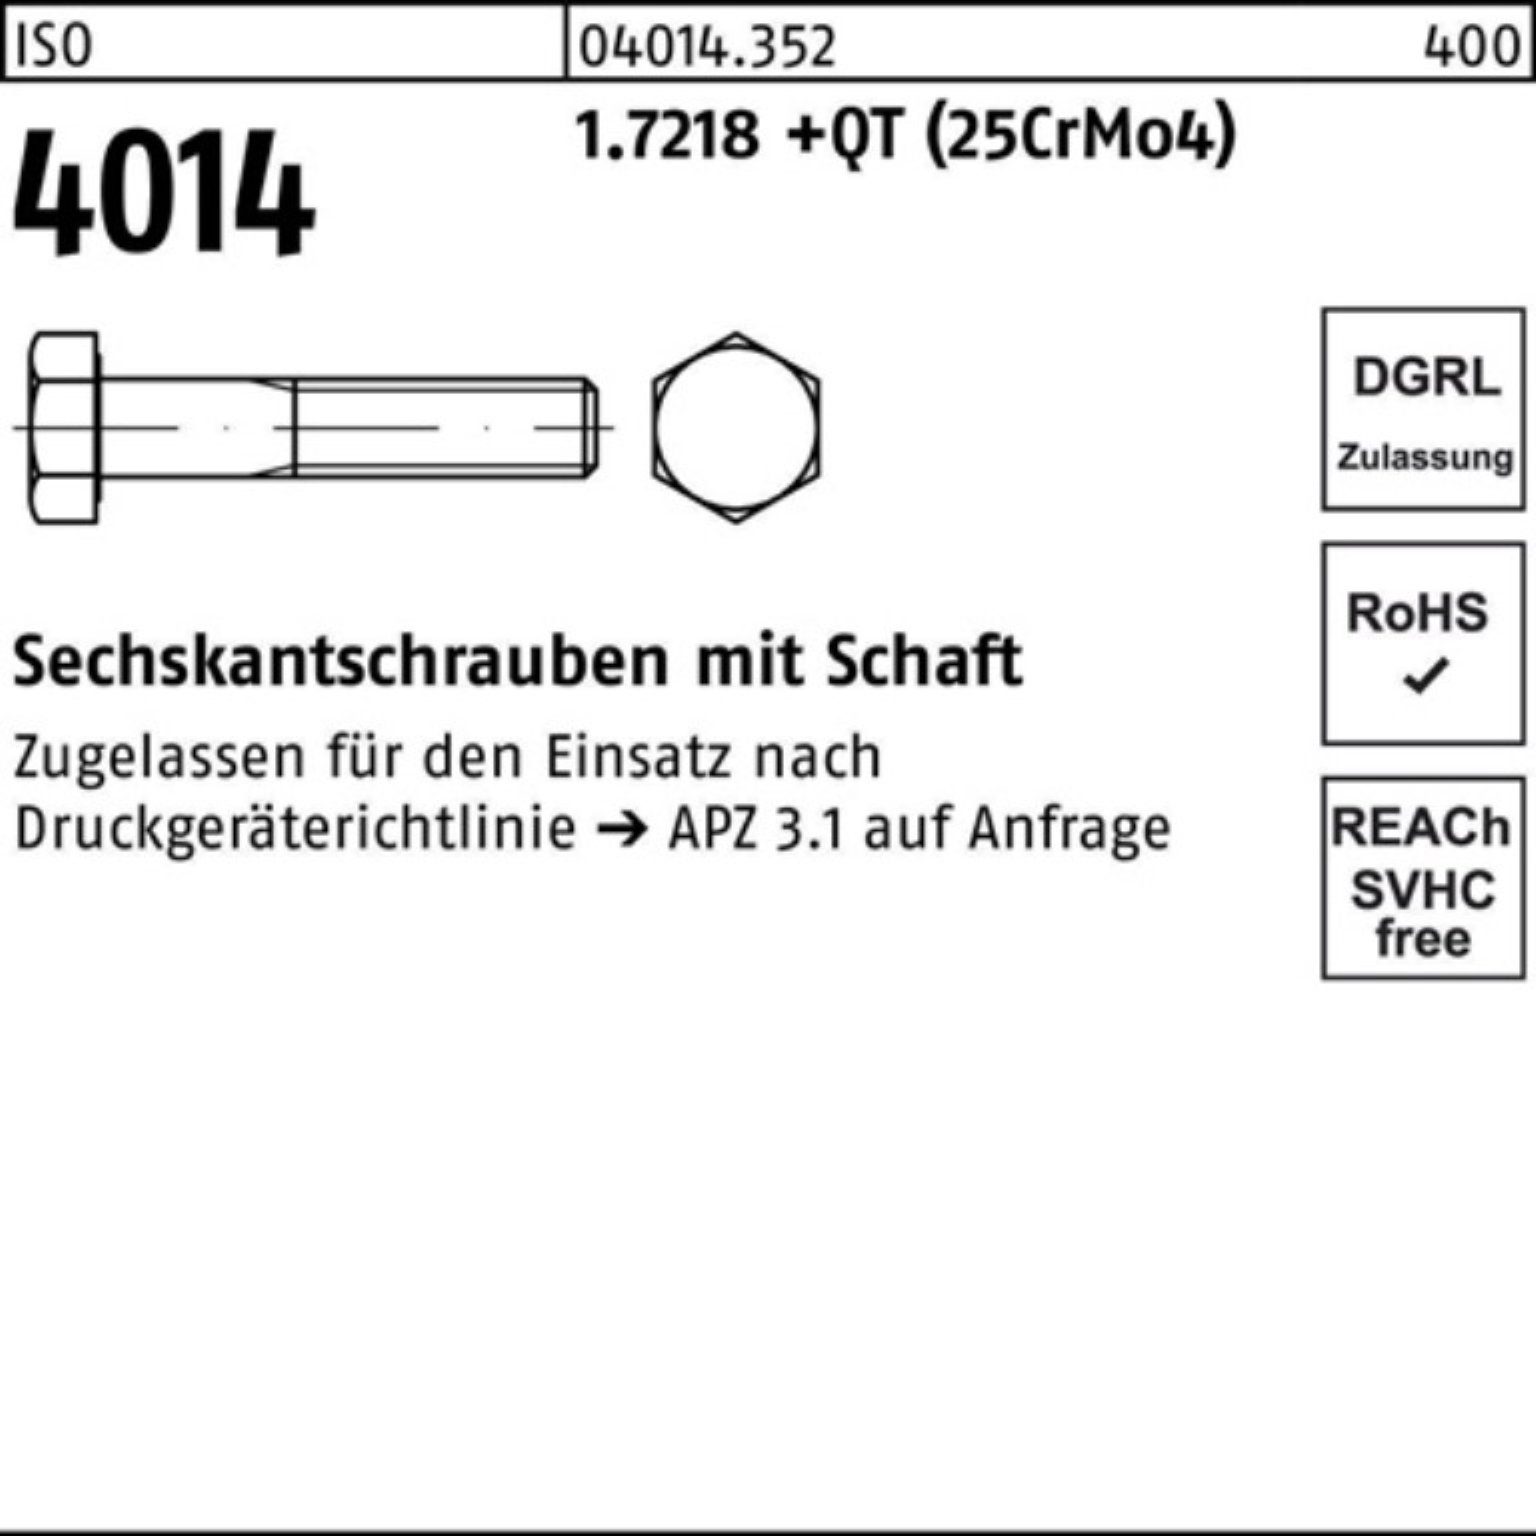 Bufab Sechskantschraube 100er Pack ISO 200 (25Cr 1.7218 M24x 4014 Schaft Sechskantschraube +QT